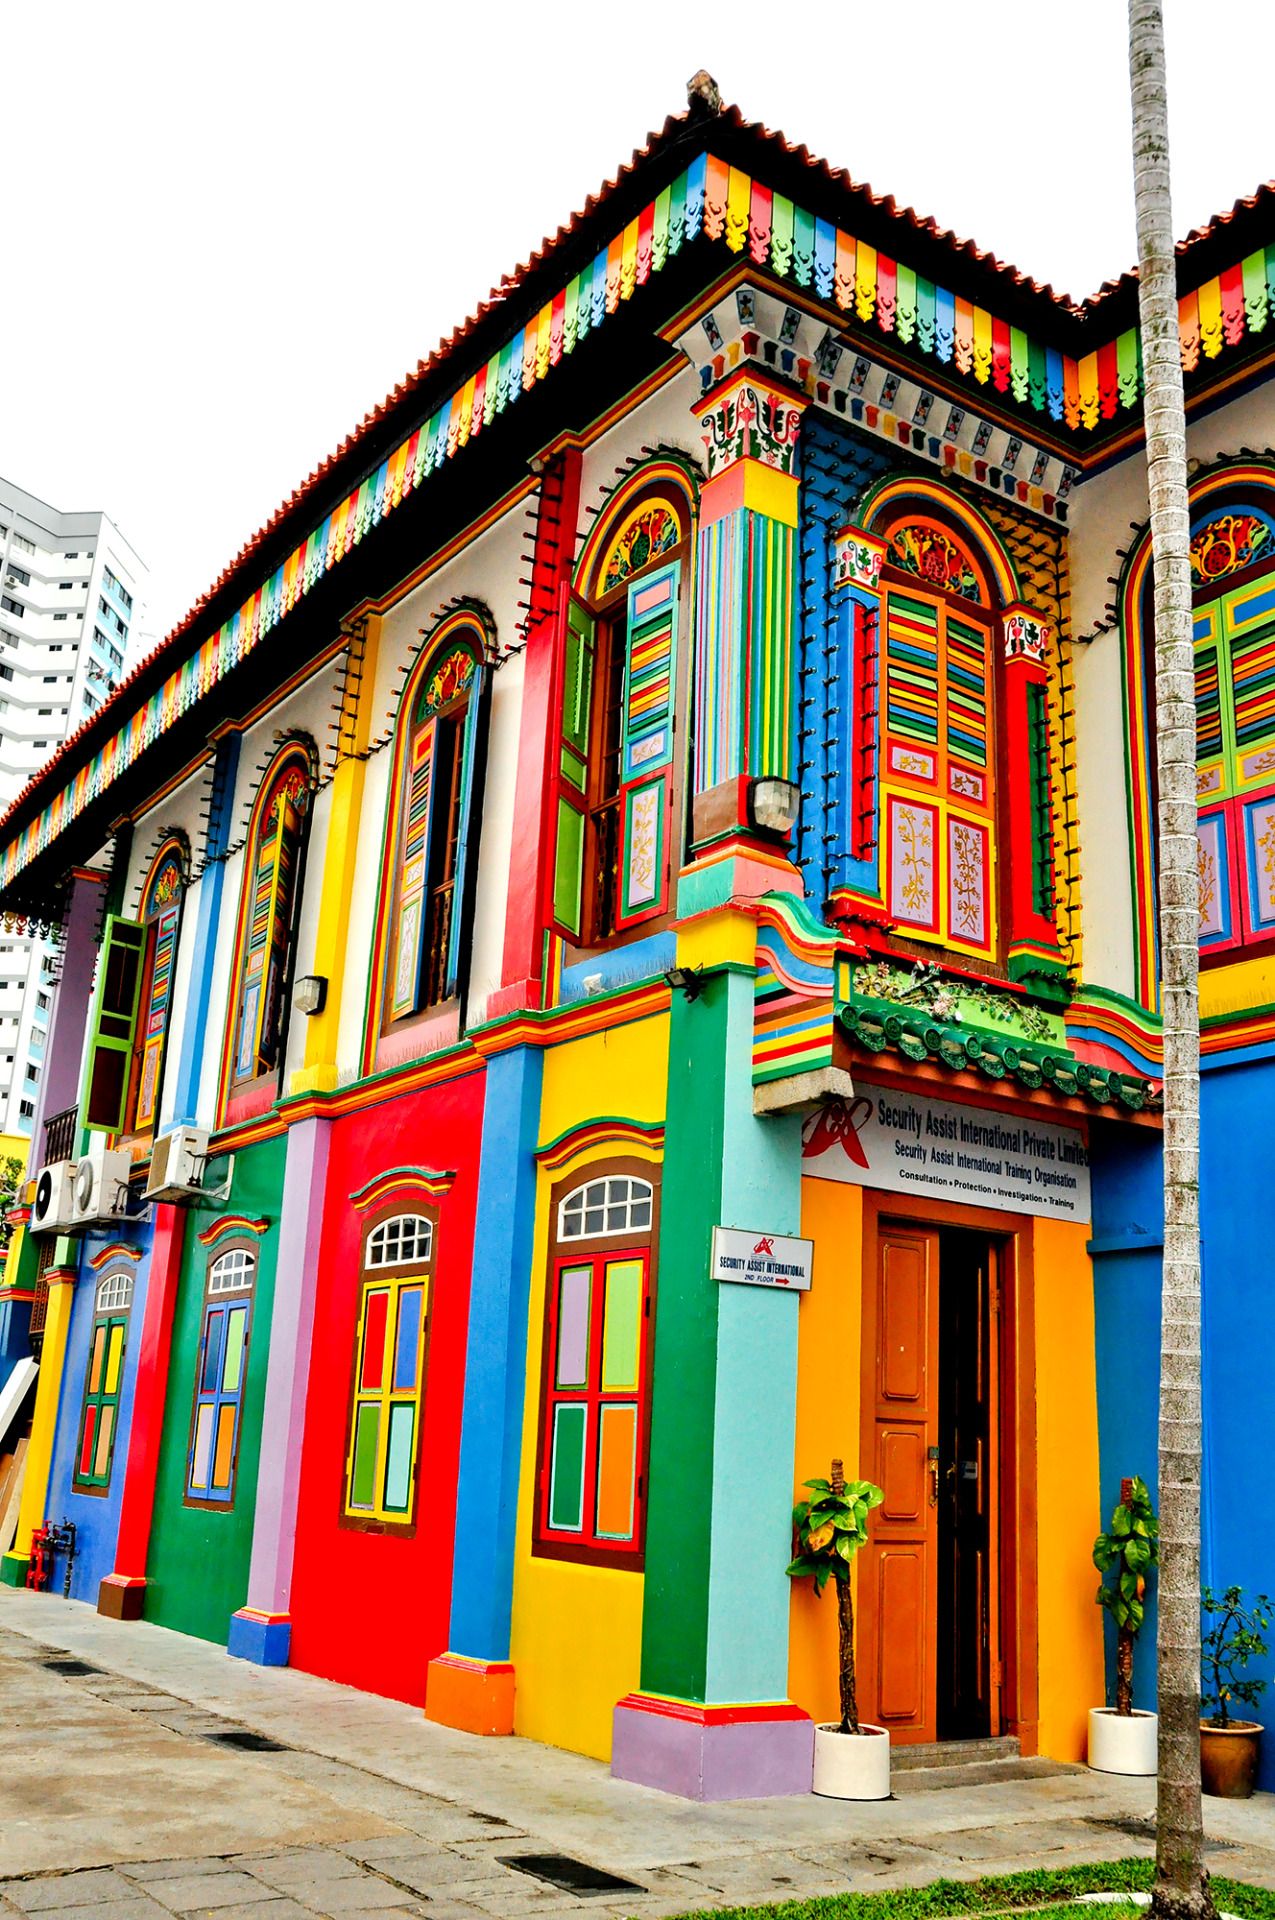 Colorful Building in Singapore | pais | Pinterest | Singapore ...